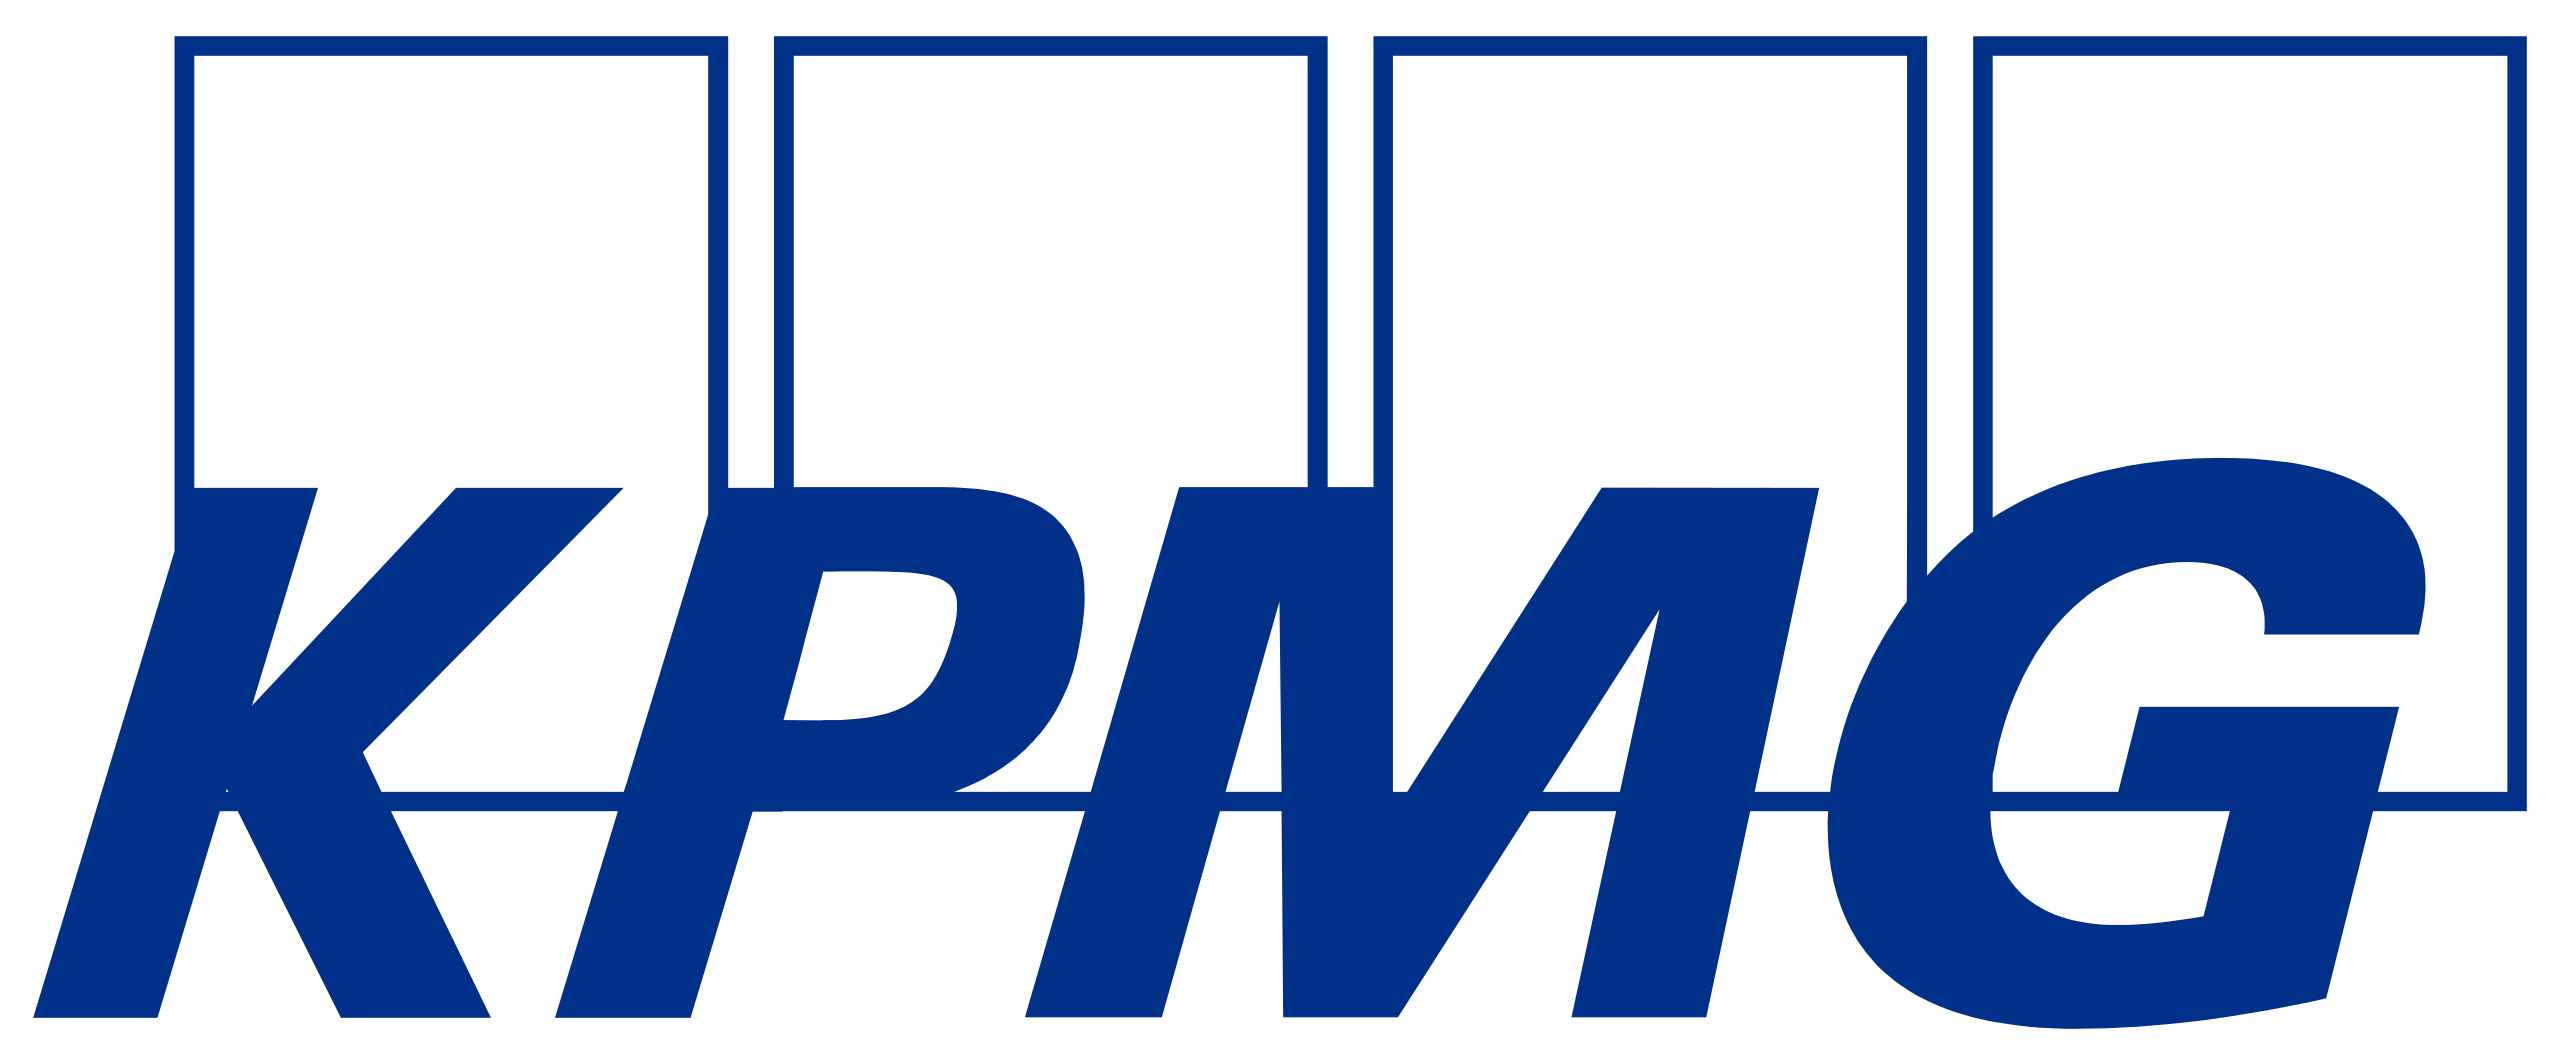 2560px-kpmg_logo.svg_